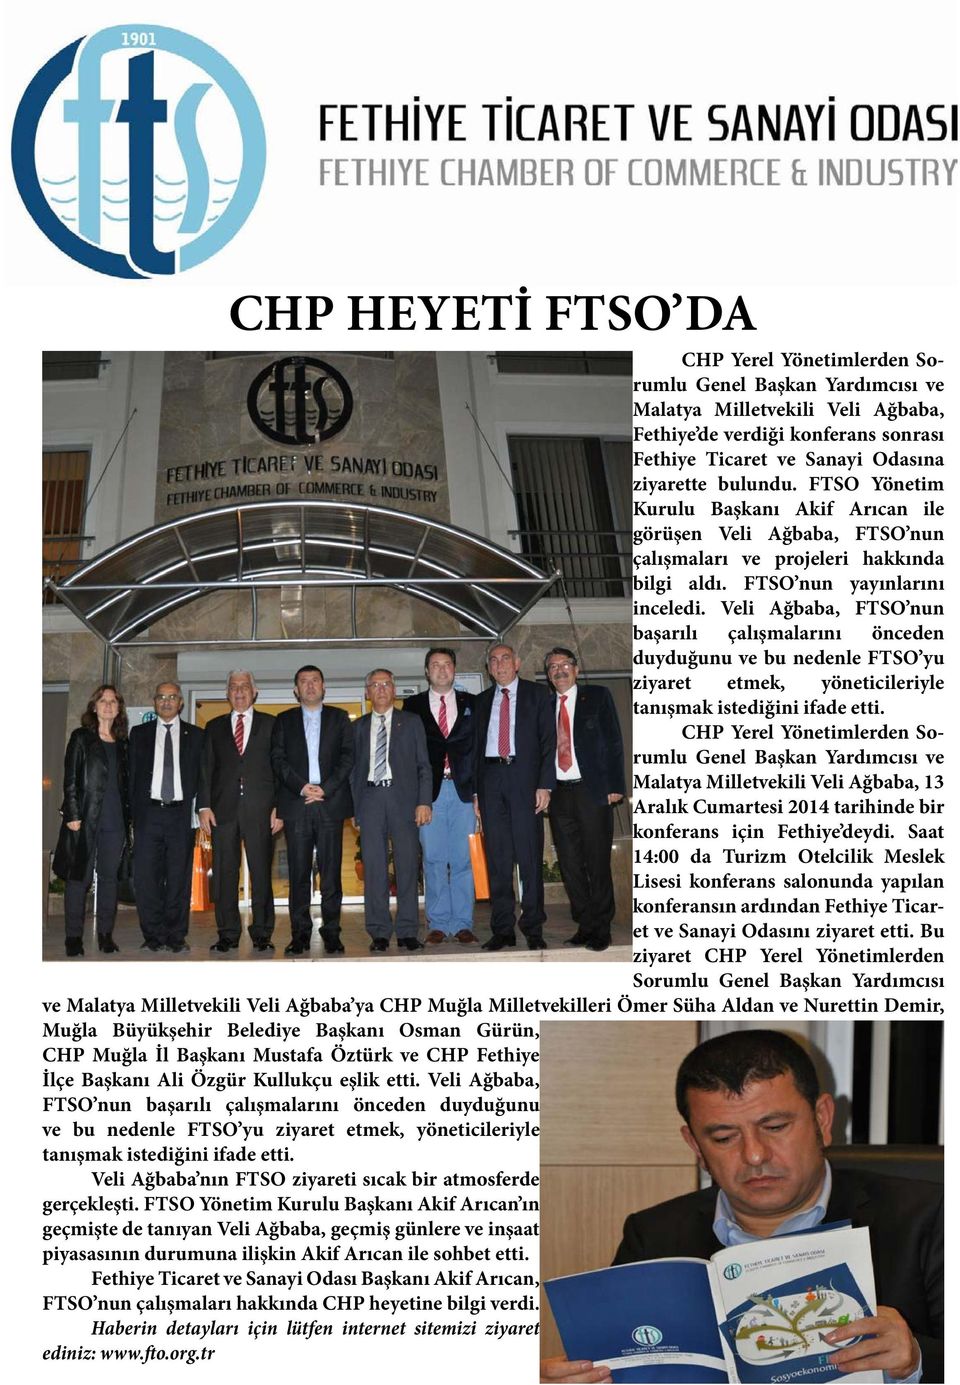 Veli Ağbaba, FTSO nun başarılı çalışmalarını önceden duyduğunu ve bu nedenle FTSO yu ziyaret etmek, yöneticileriyle tanışmak istediğini ifade etti.